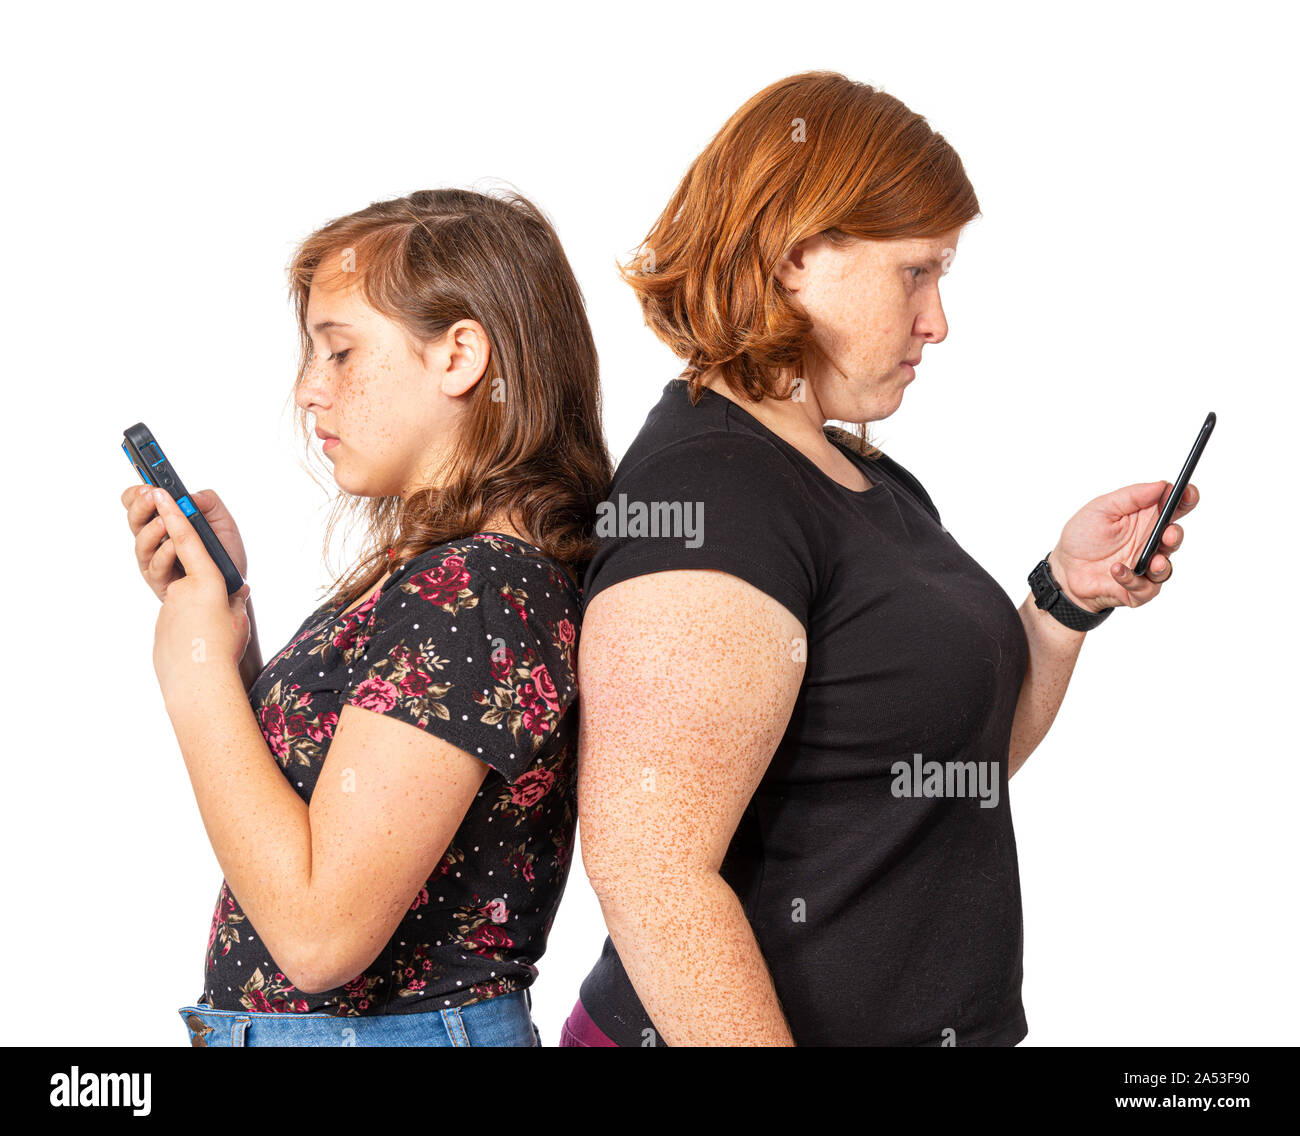 Orizzontale di studio shot di una madre e figlia appoggiata di schiena ogni utilizzando il proprio telefono cellulare. Sfondo bianco. Foto Stock